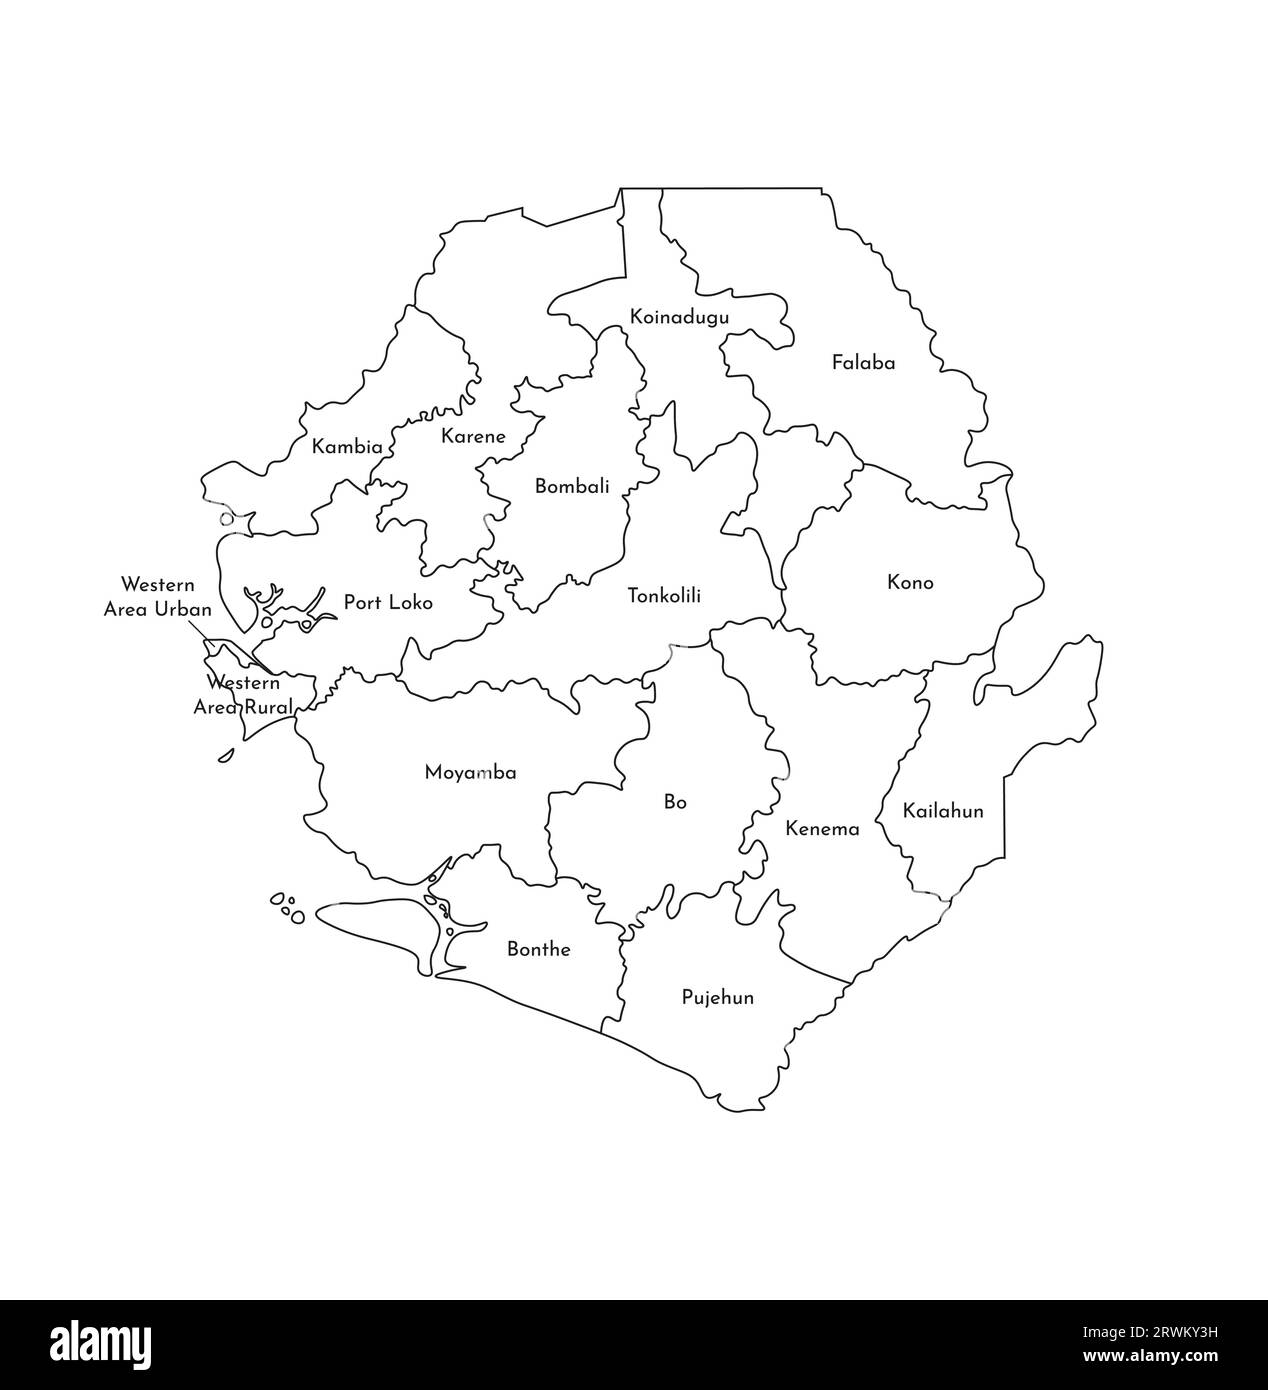 Illustrazione vettoriale isolata della mappa amministrativa semplificata della Sierra Leone. Confini e nomi dei distretti (regioni). Silhouette nere. Illustrazione Vettoriale